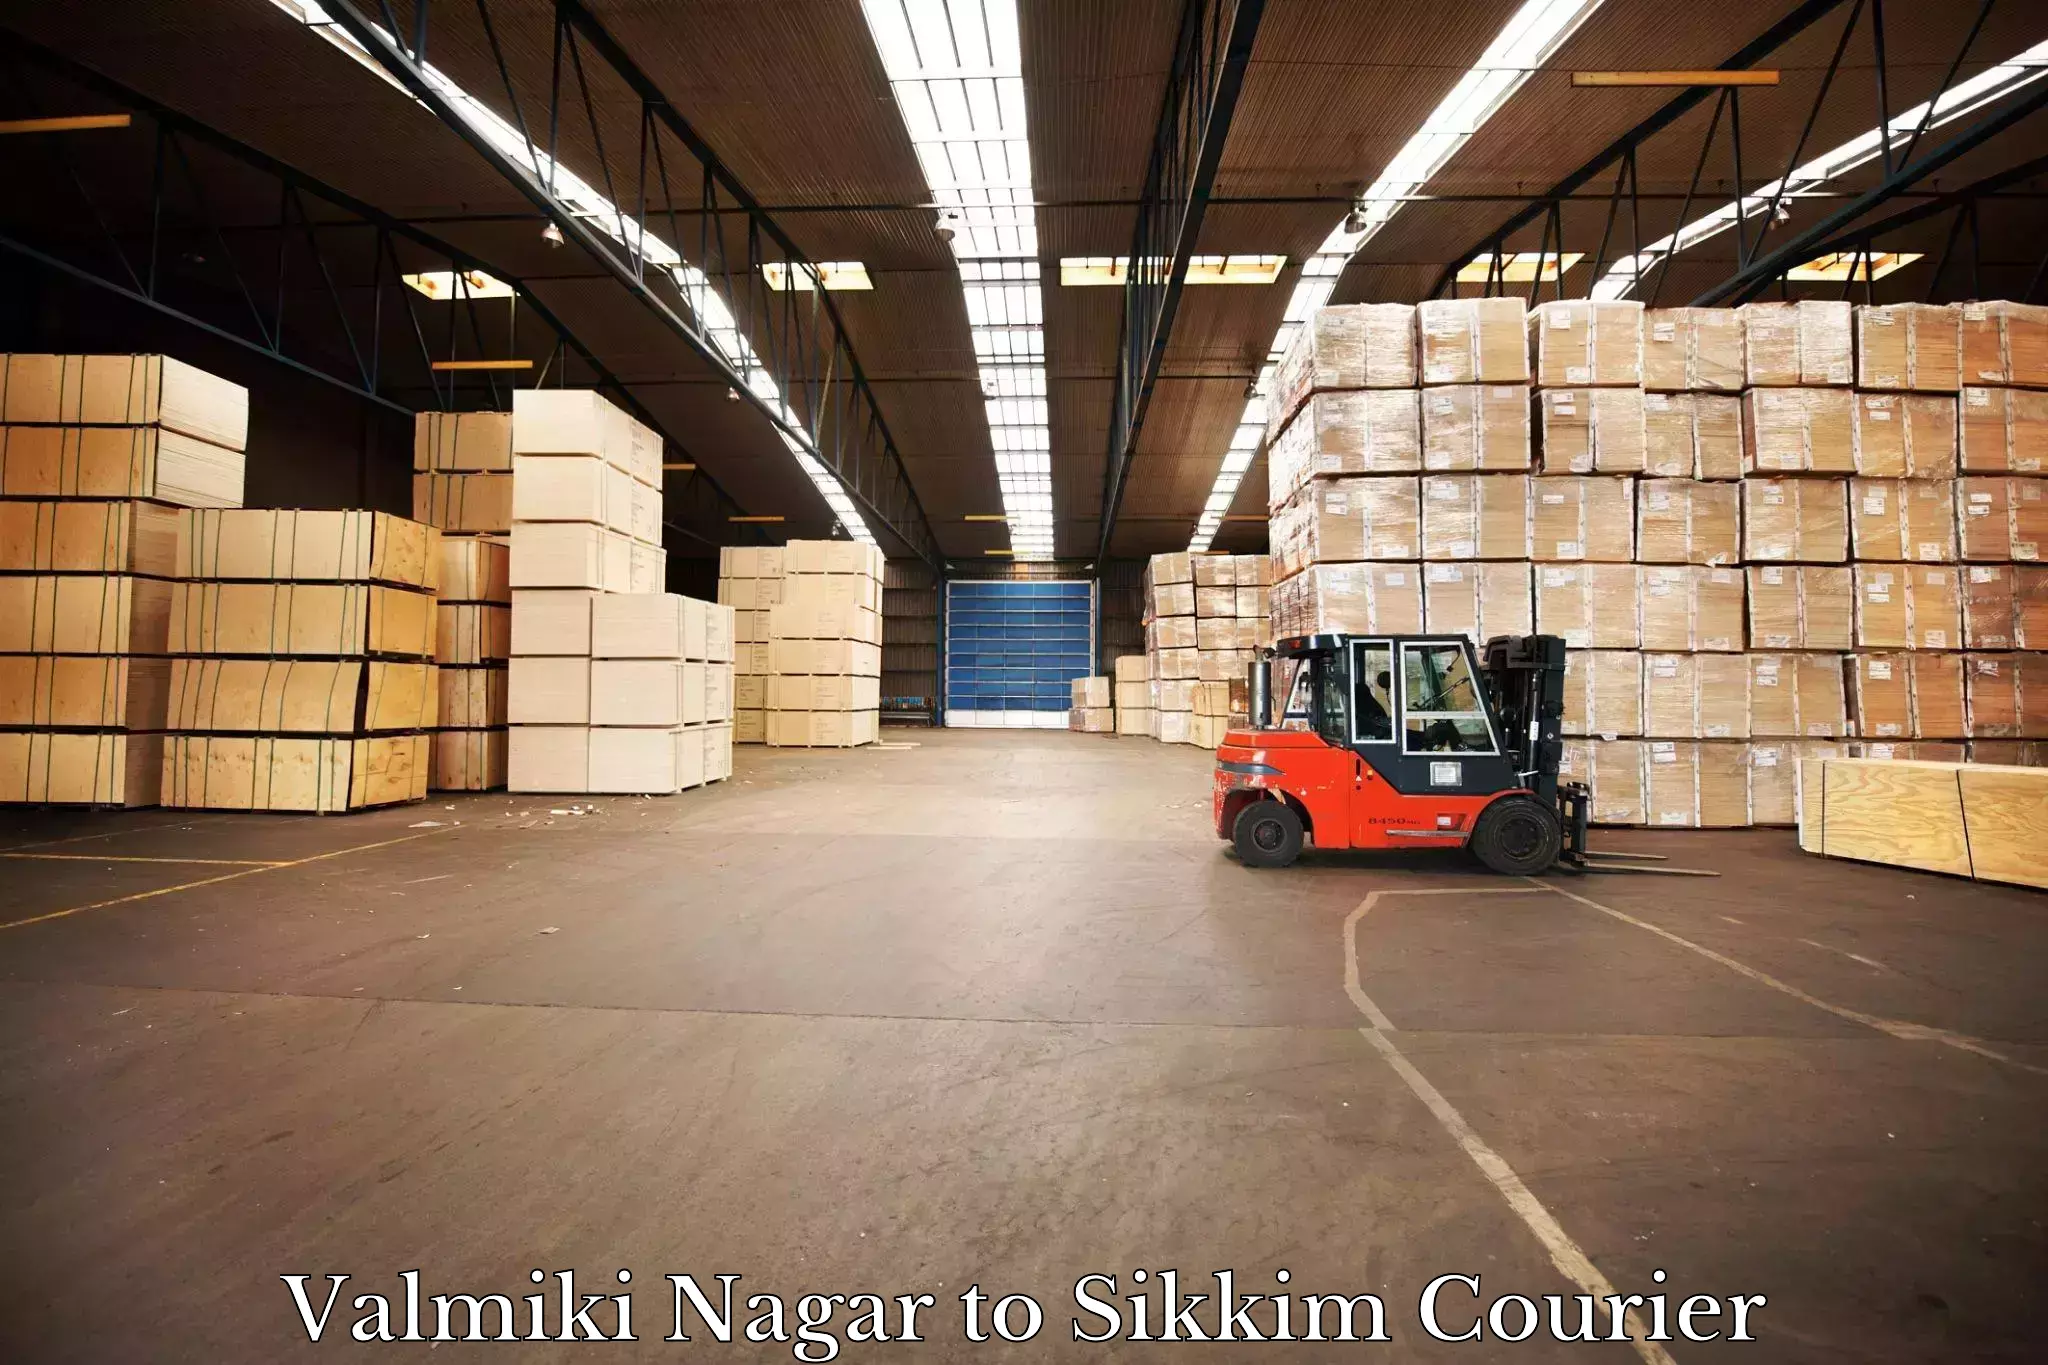 Cargo courier service Valmiki Nagar to North Sikkim